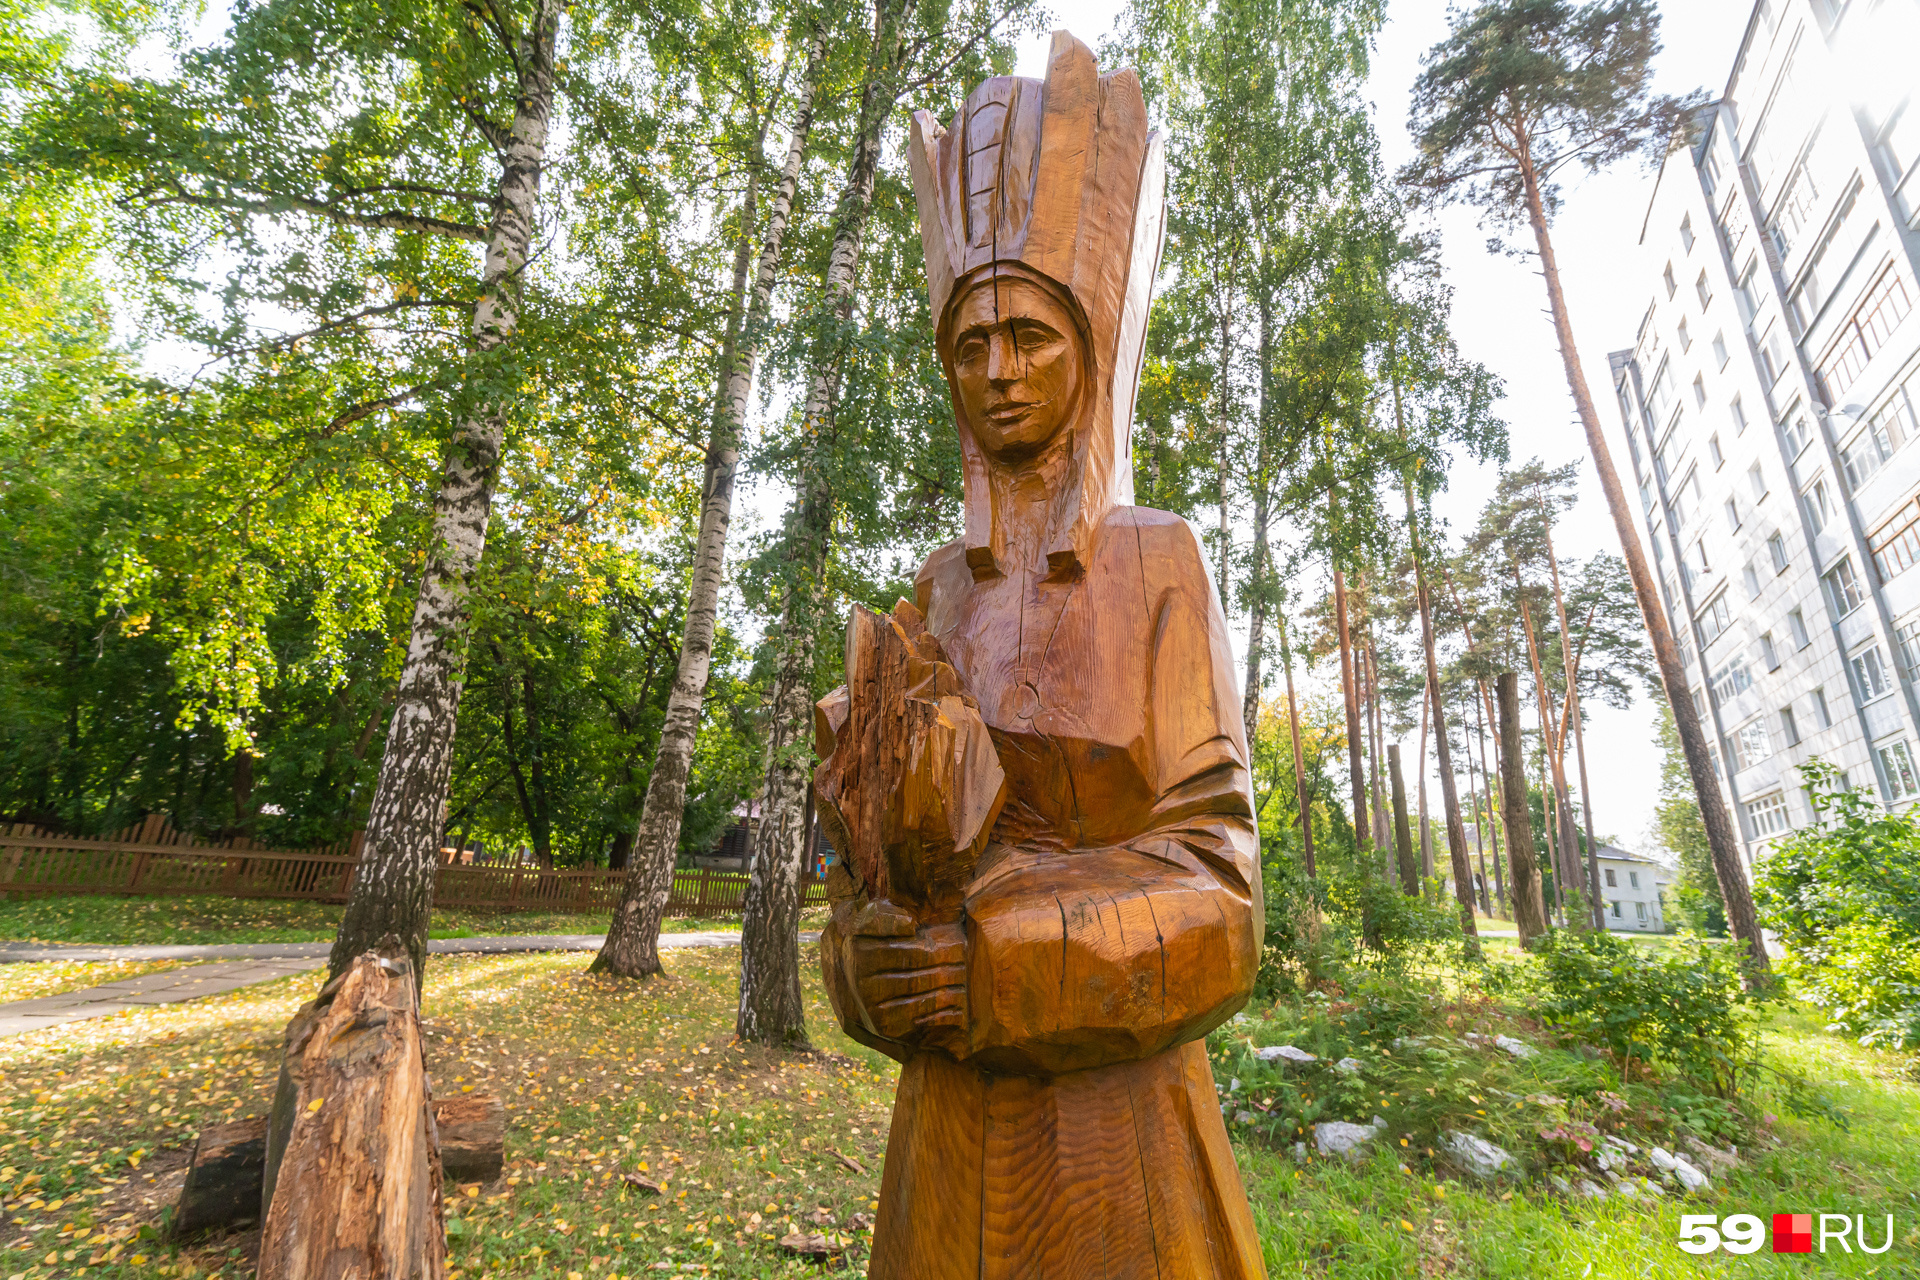 Павел Бажов некоторое время прожил в Краснокамске, поэтому в местном сквере поставили фигуры по мотивам его сказок